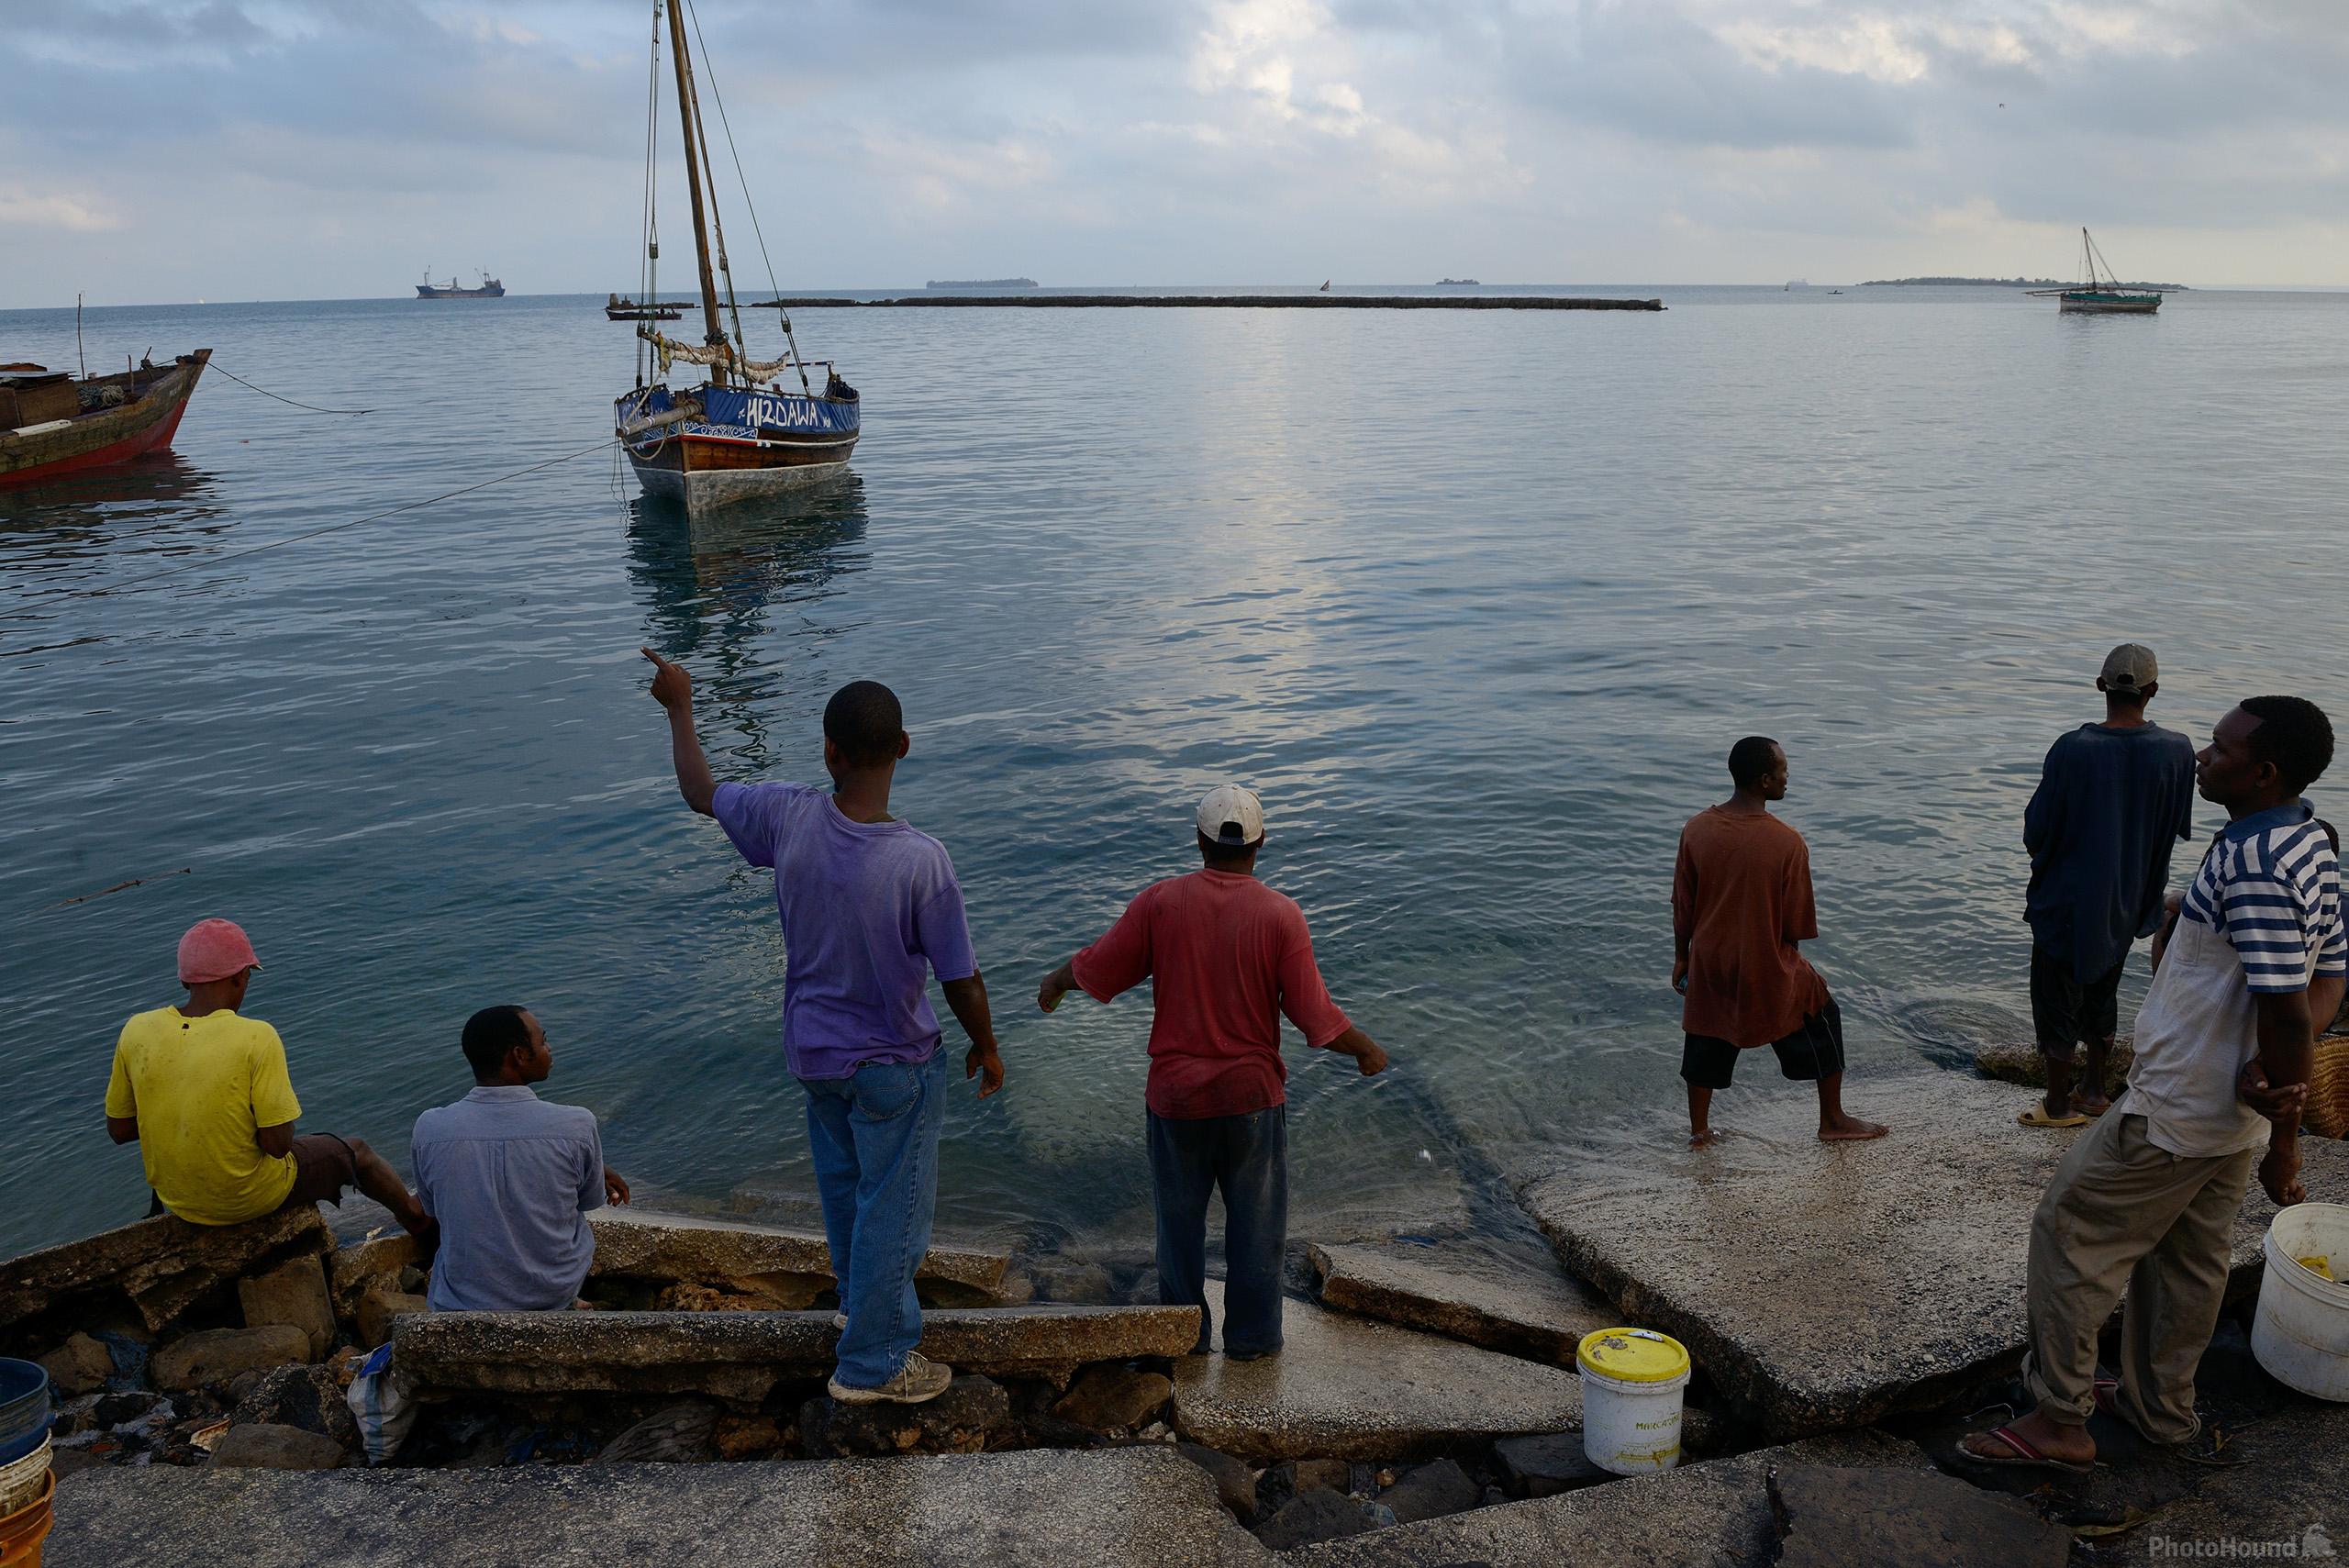 Image of Zanzibar Harbour & Fishermen by Luka Esenko